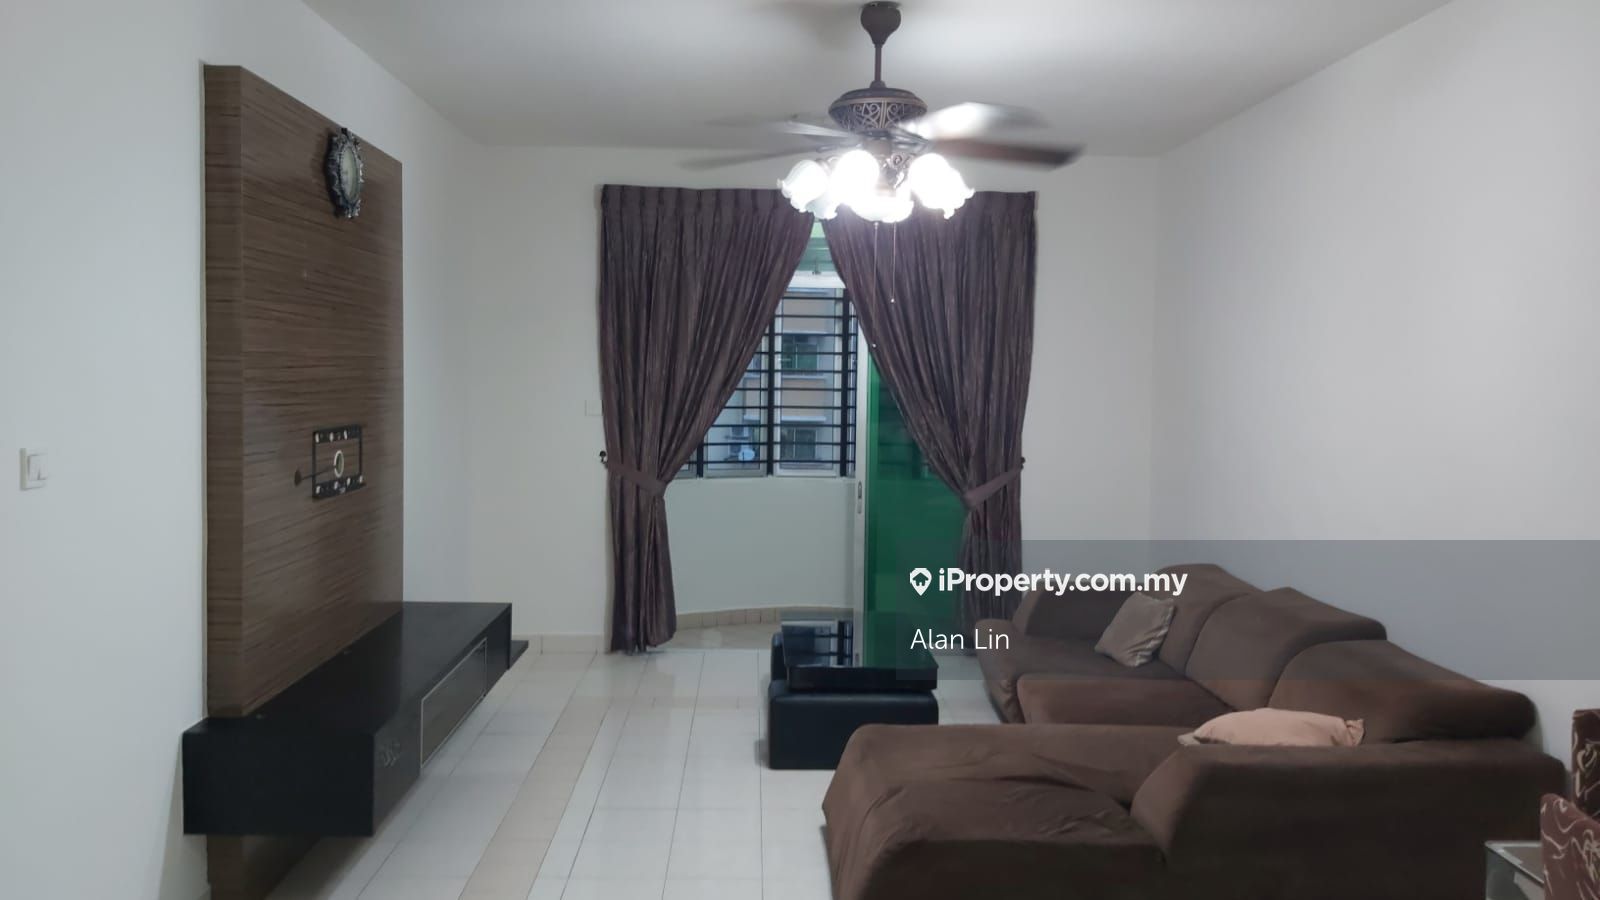 Desa Datuk Hajah Hasnah Apartment 3 Bedrooms For Rent In Johor Bahru Johor Iproperty Com My